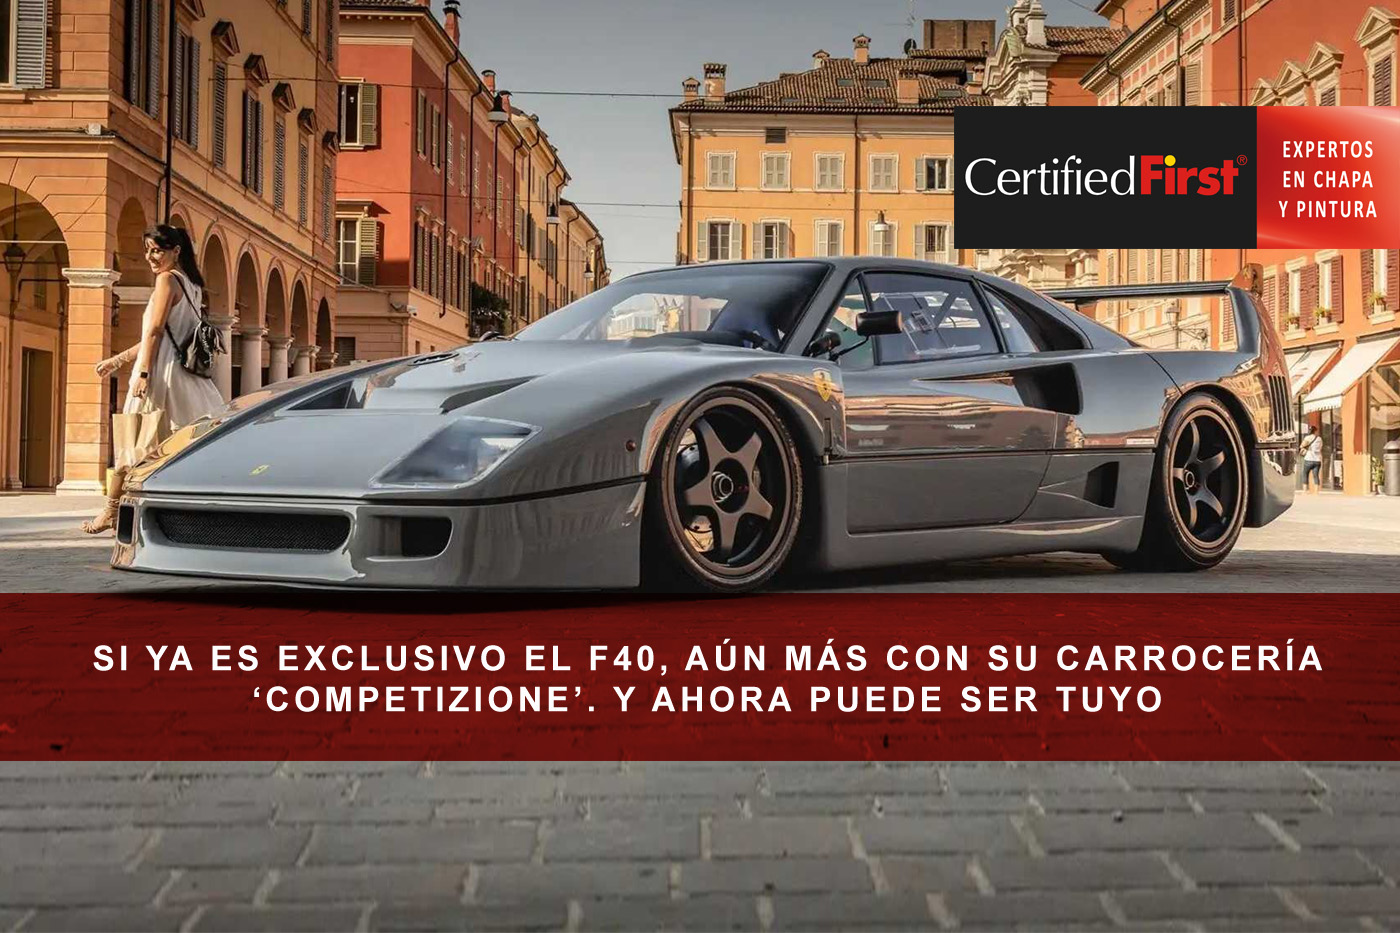 Si ya es exclusivo el F40, aún más con su carrocería ‘Competizione’. Y ahora puede ser tuyo